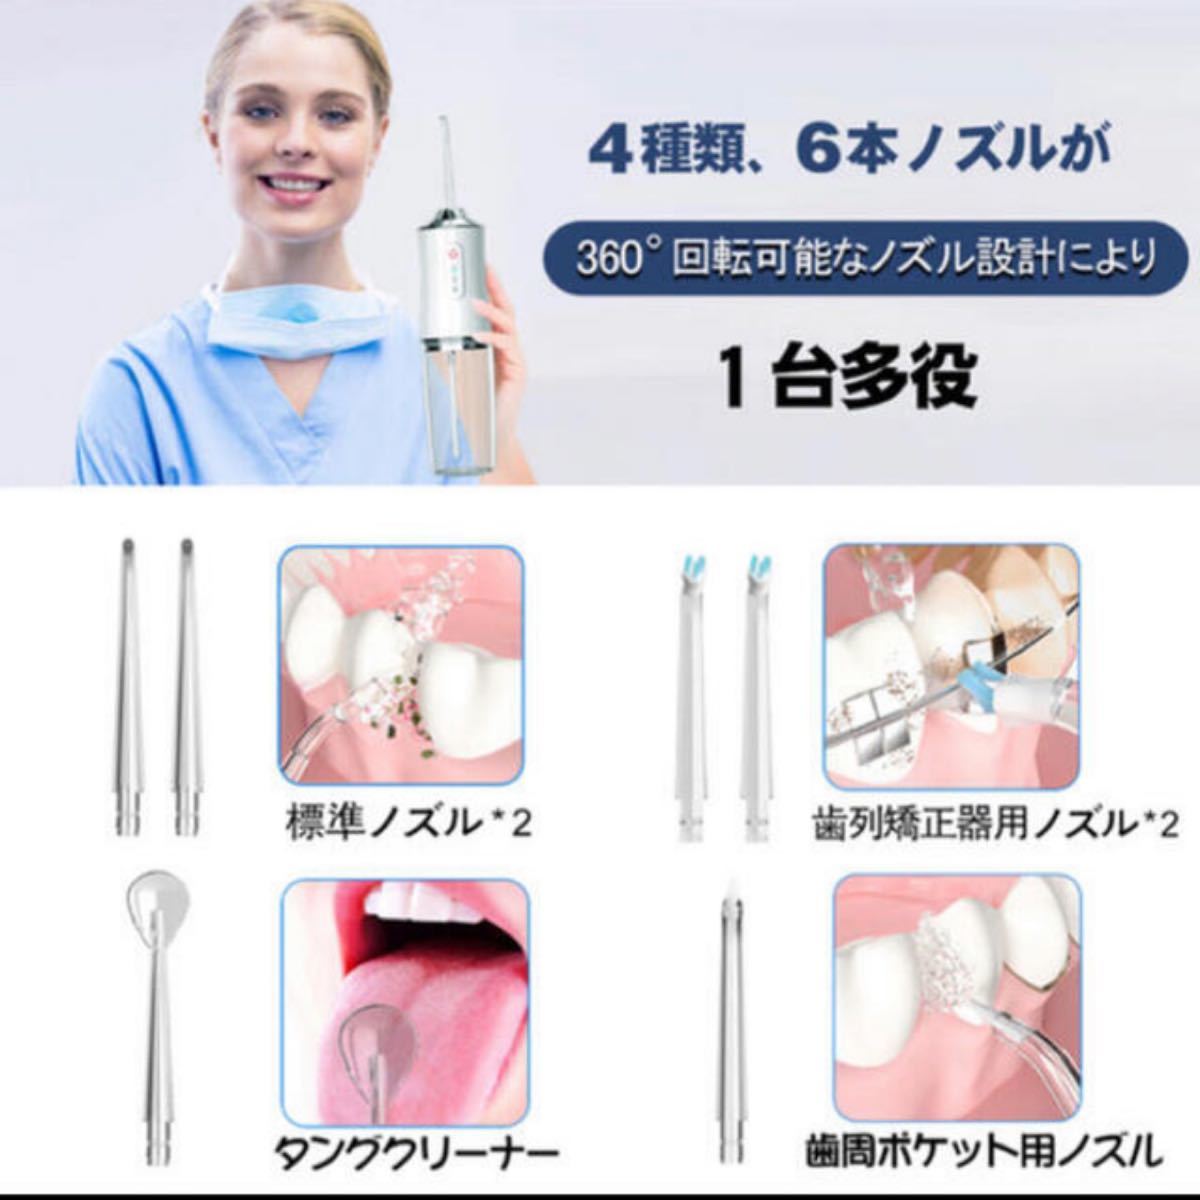 【新品未使用】口腔洗浄器 ジェットウォッシャー IPX7 歯垢除去 虫歯予防 歯周炎